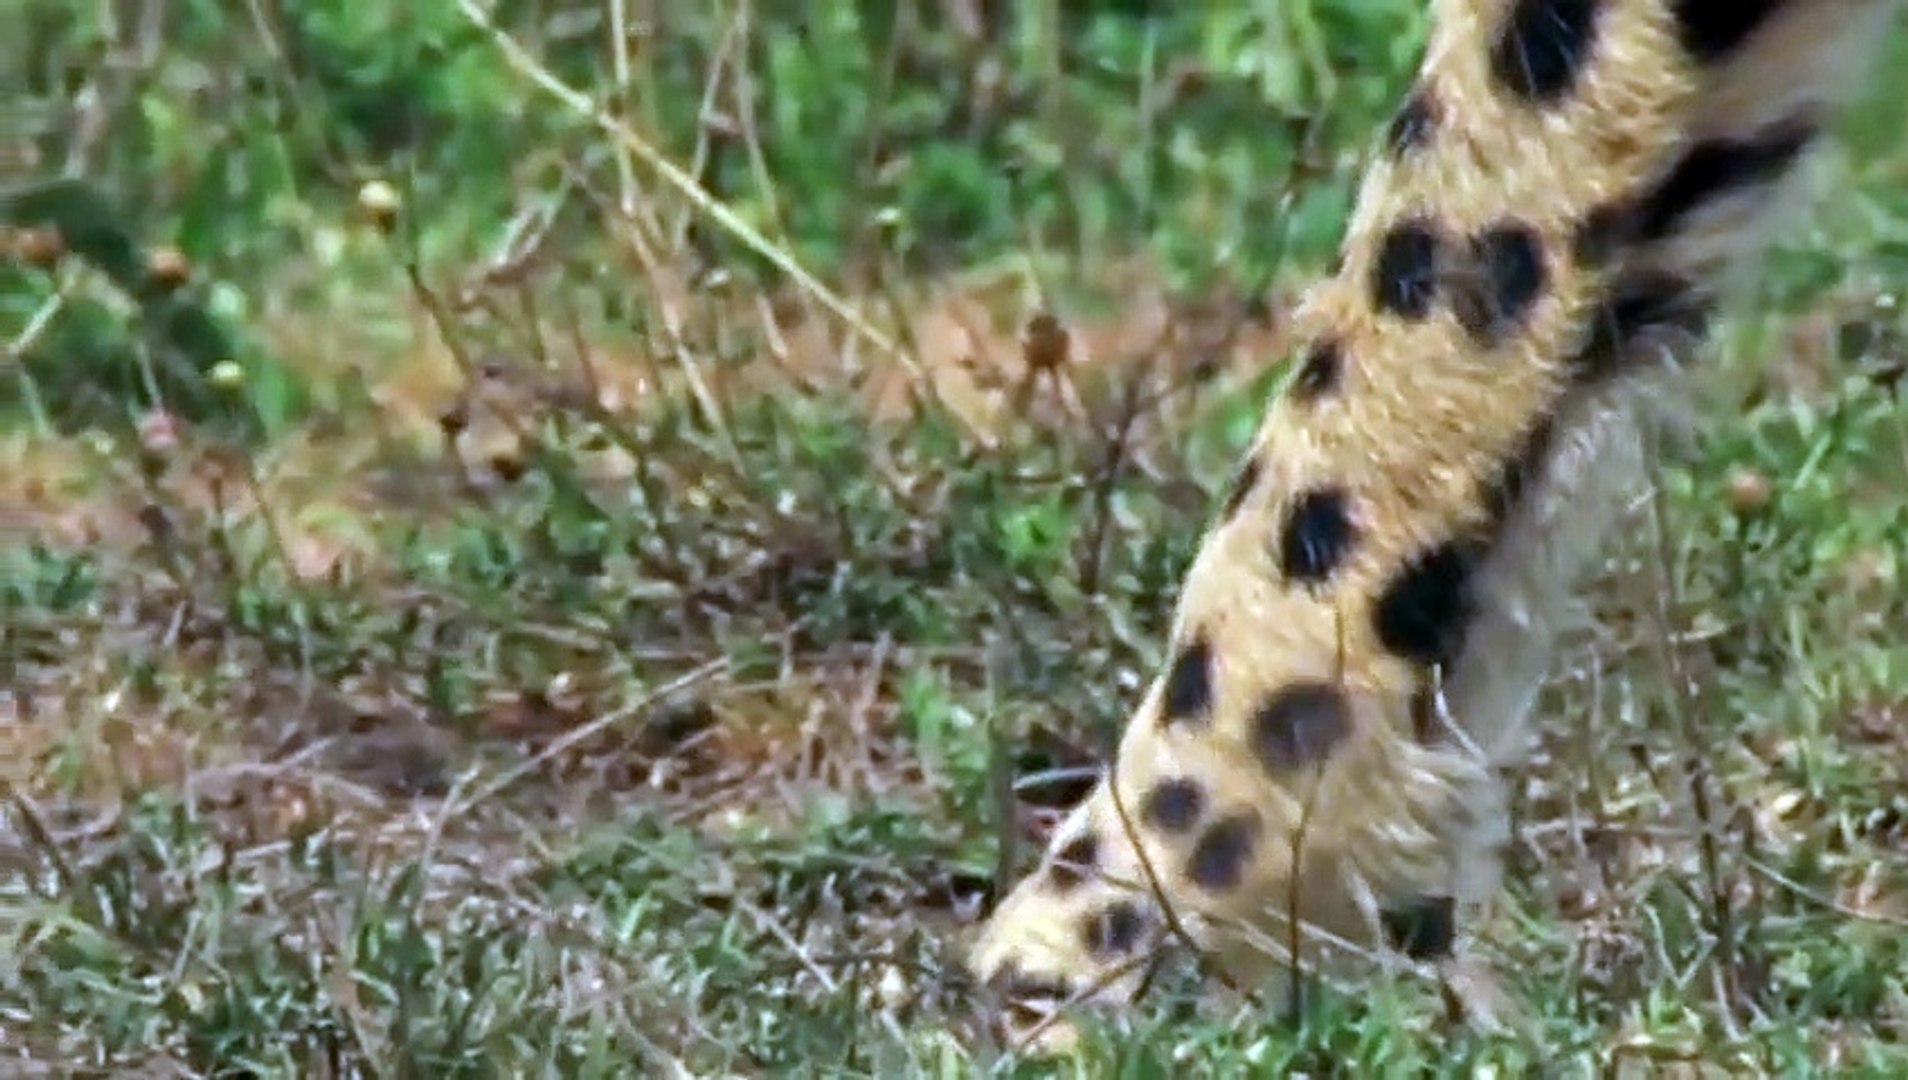 Cheetah Attacks and Kills Deer